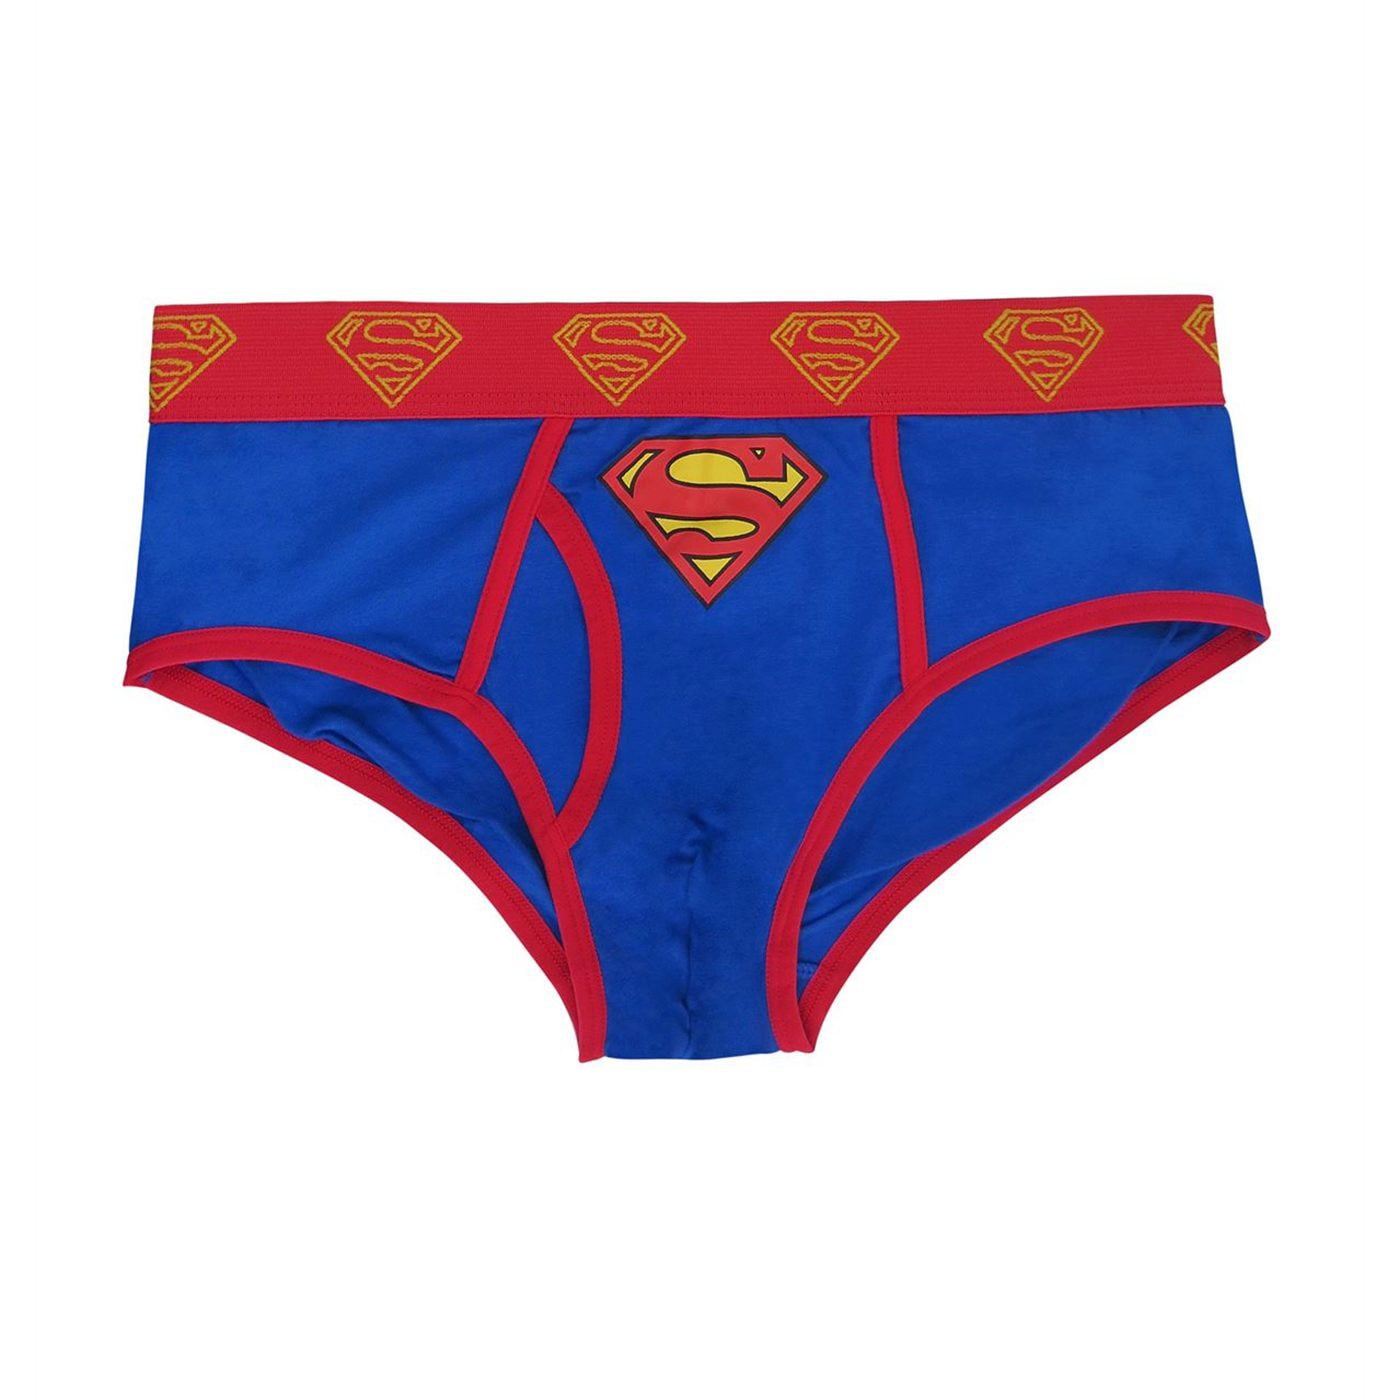 Superman Symbol Men's Underwear Fashion Briefs-Large (36-38) 